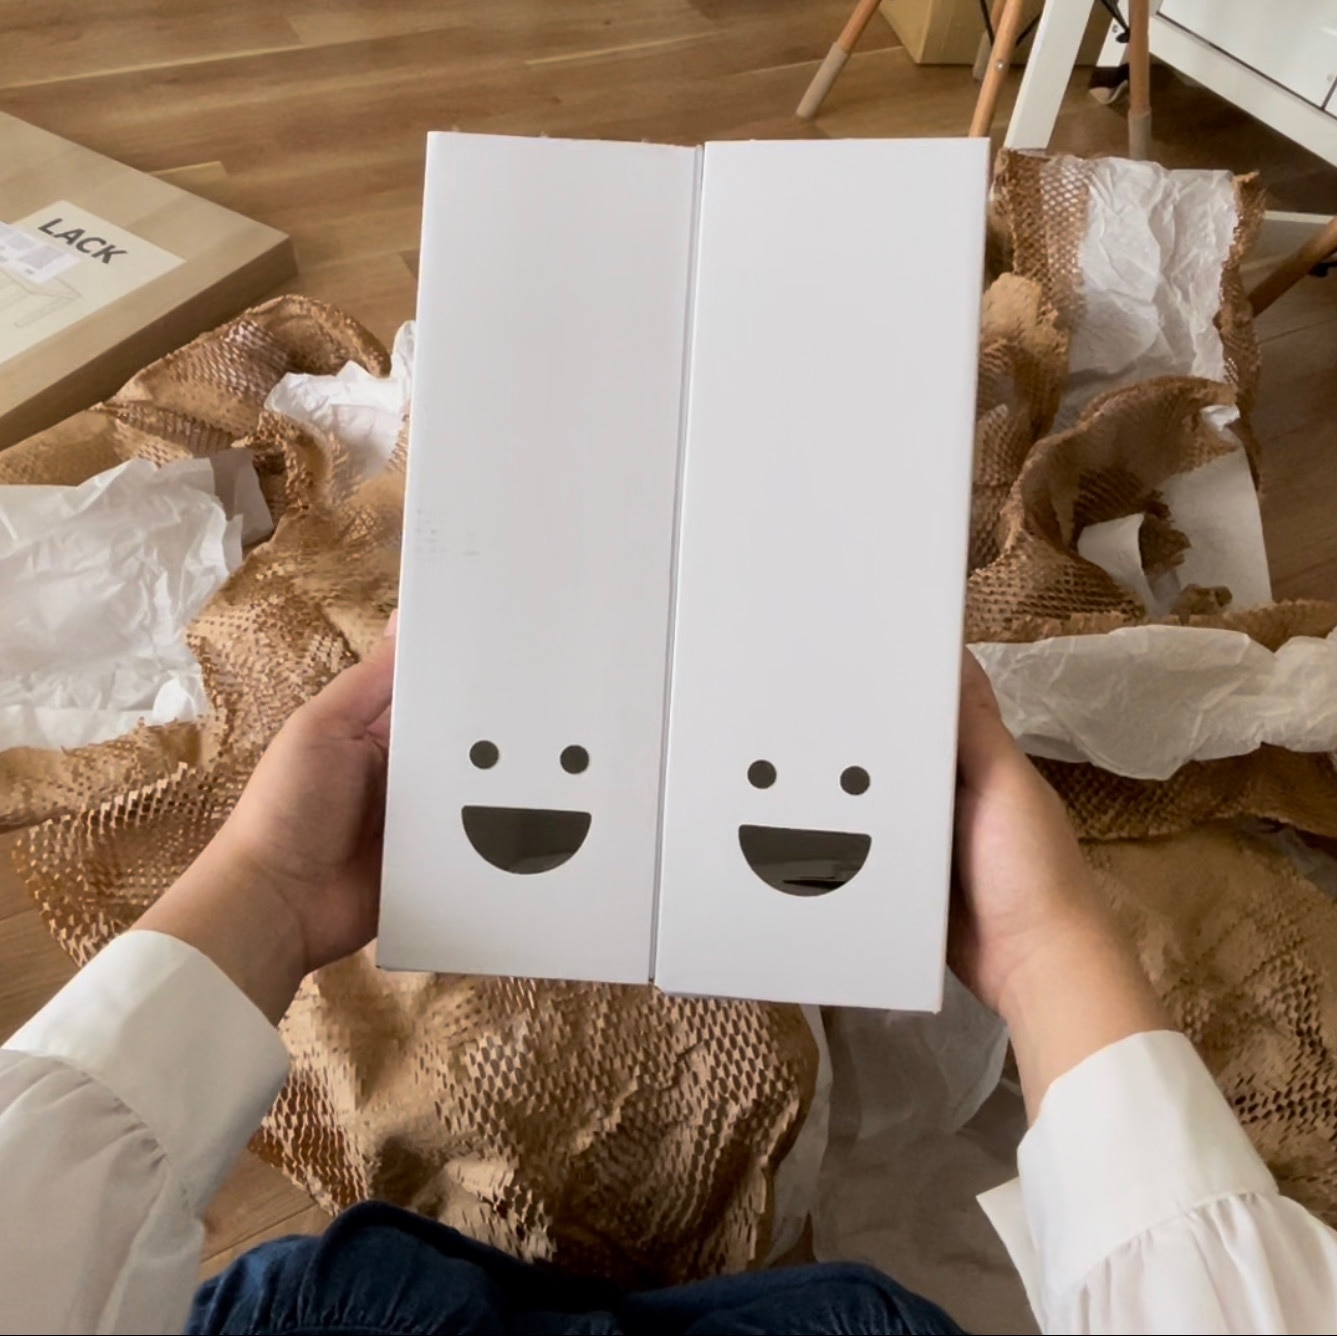 IKEA イケア マガジンファイル ホワイト 2ピース m50497502 TJABBA シャッバ  日用品雑貨 生活雑貨 収納用品 マガジンボックス ファイルボックス おしゃれ シンプル 北欧 かわいい リビング